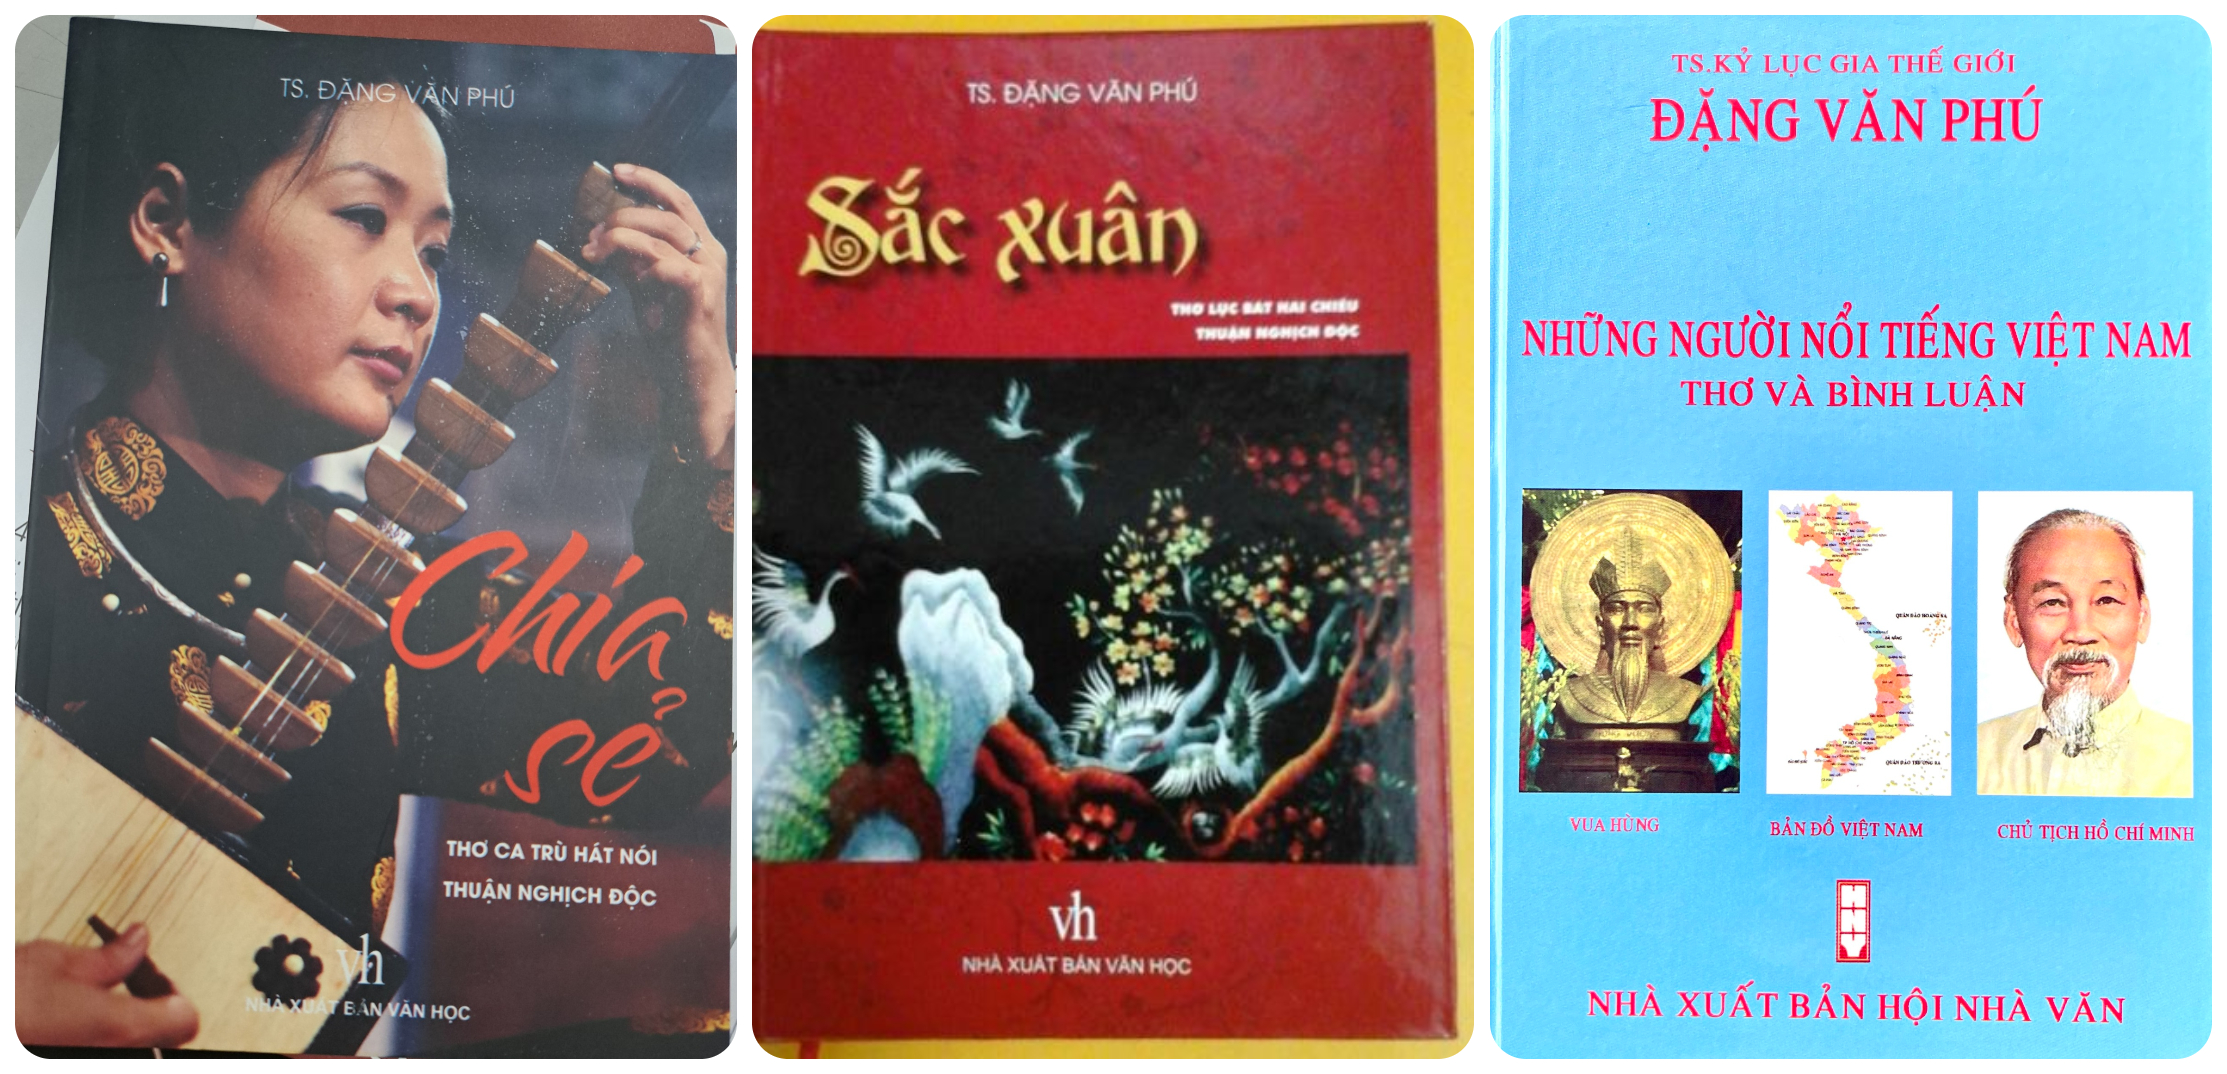 Ba tập thơ chuyên về ca trù hát nói của KLG Đặng Văn Phú.